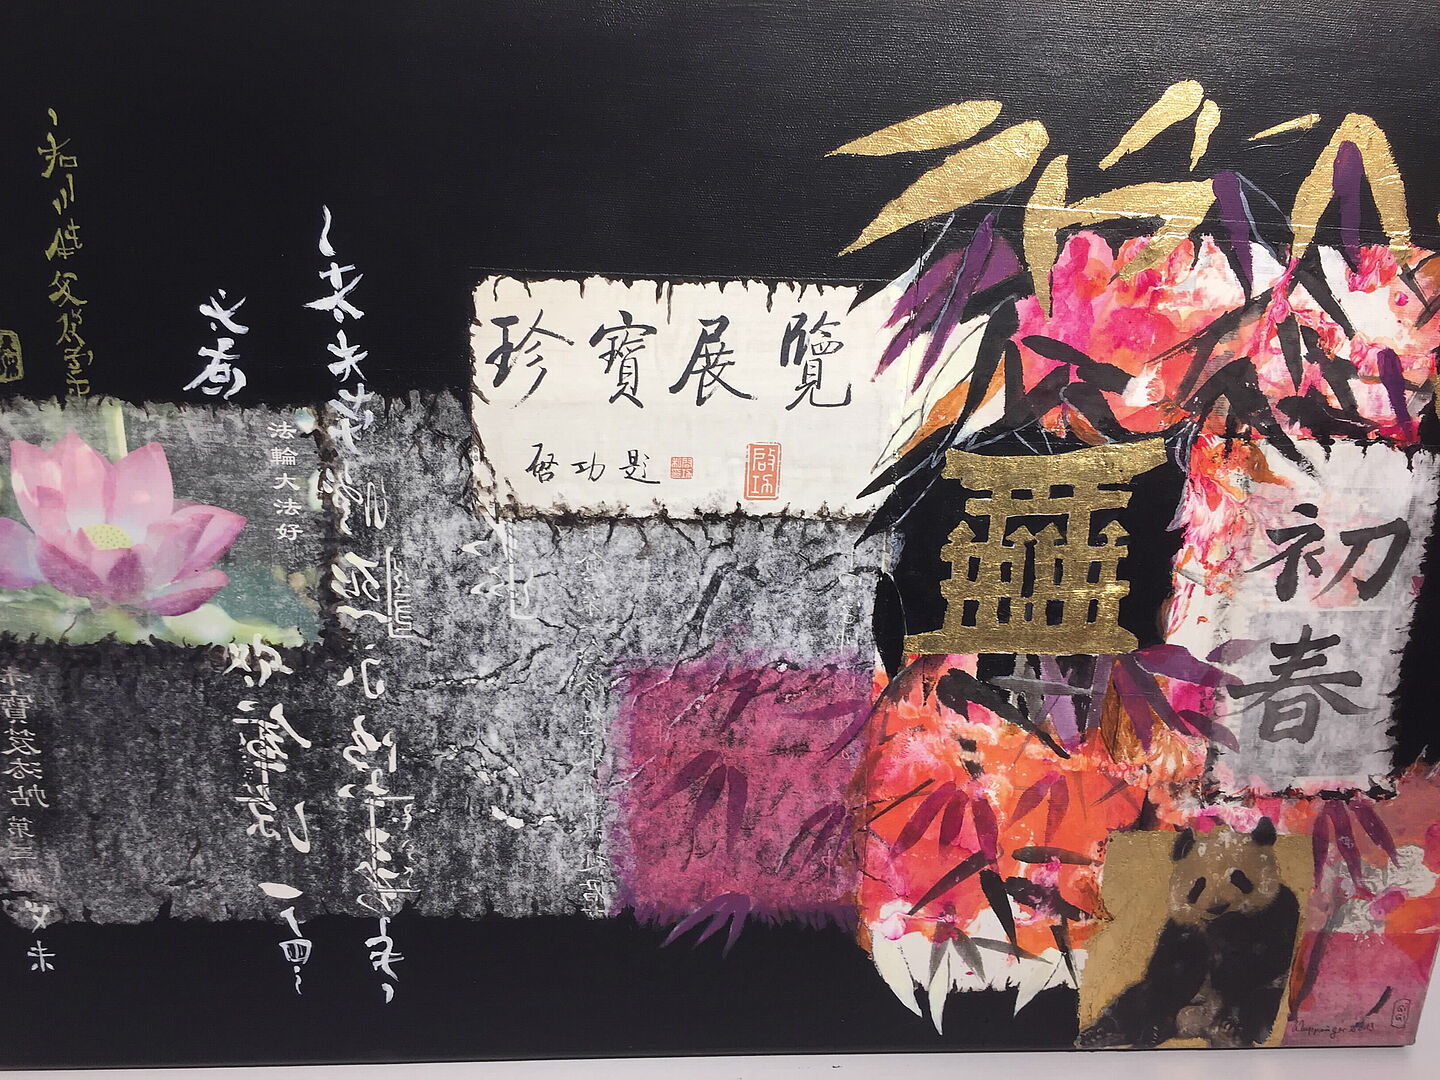 Abstraktes Bild mit chinesischen Schriftzeichen und anderen China-Typischen Elementen wie Bambusblätter, Lotusblüten, Pandabär.